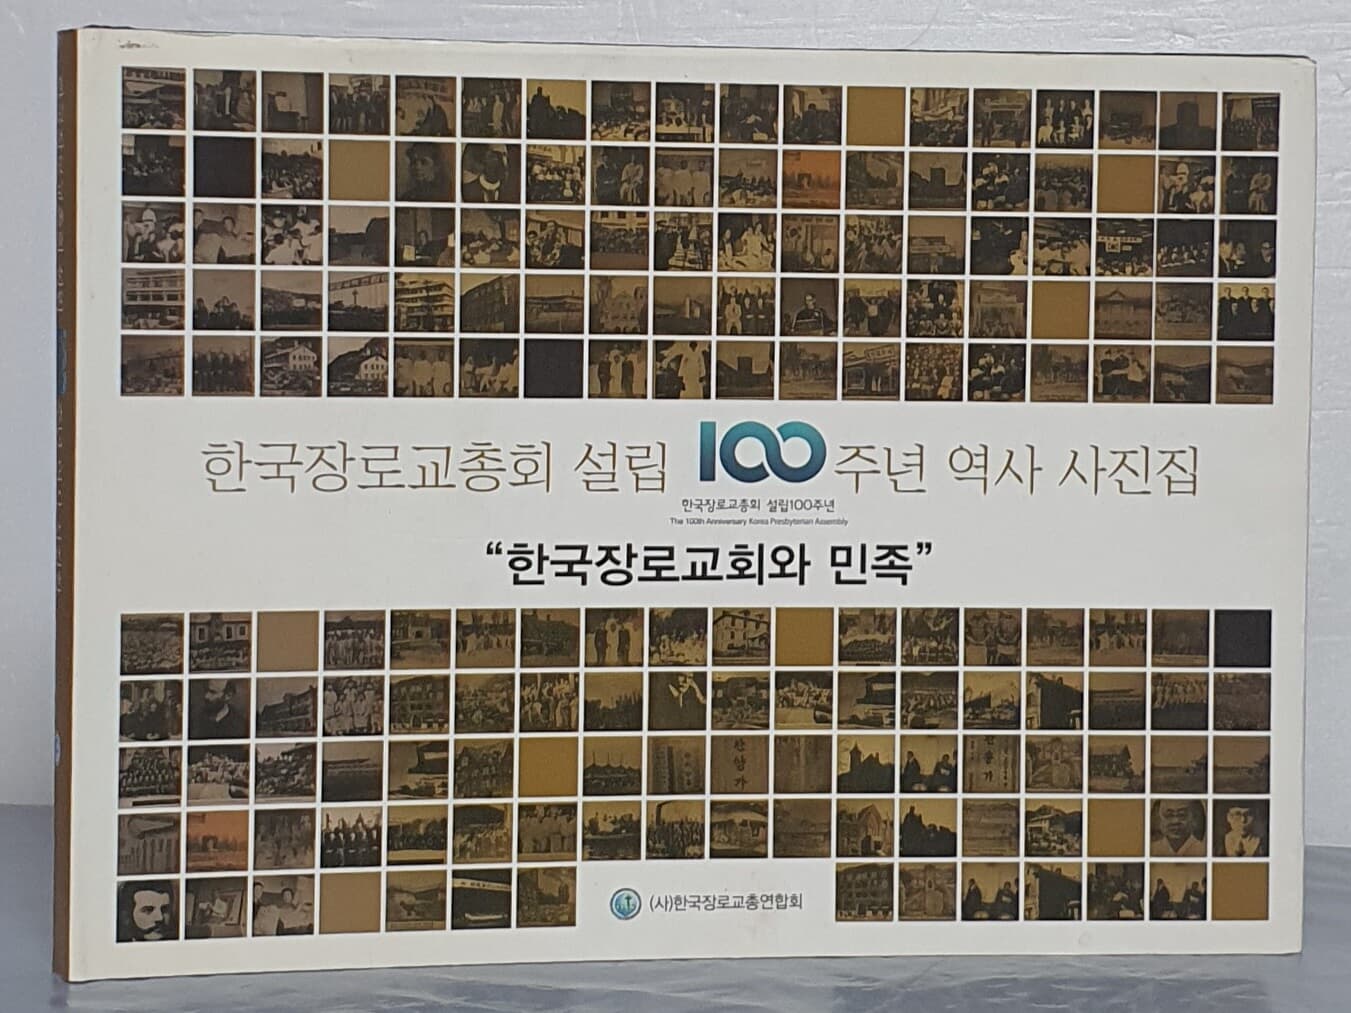 한국장로교총회 설립 100주년 역사 사진집 "한국장로교회와 민족"